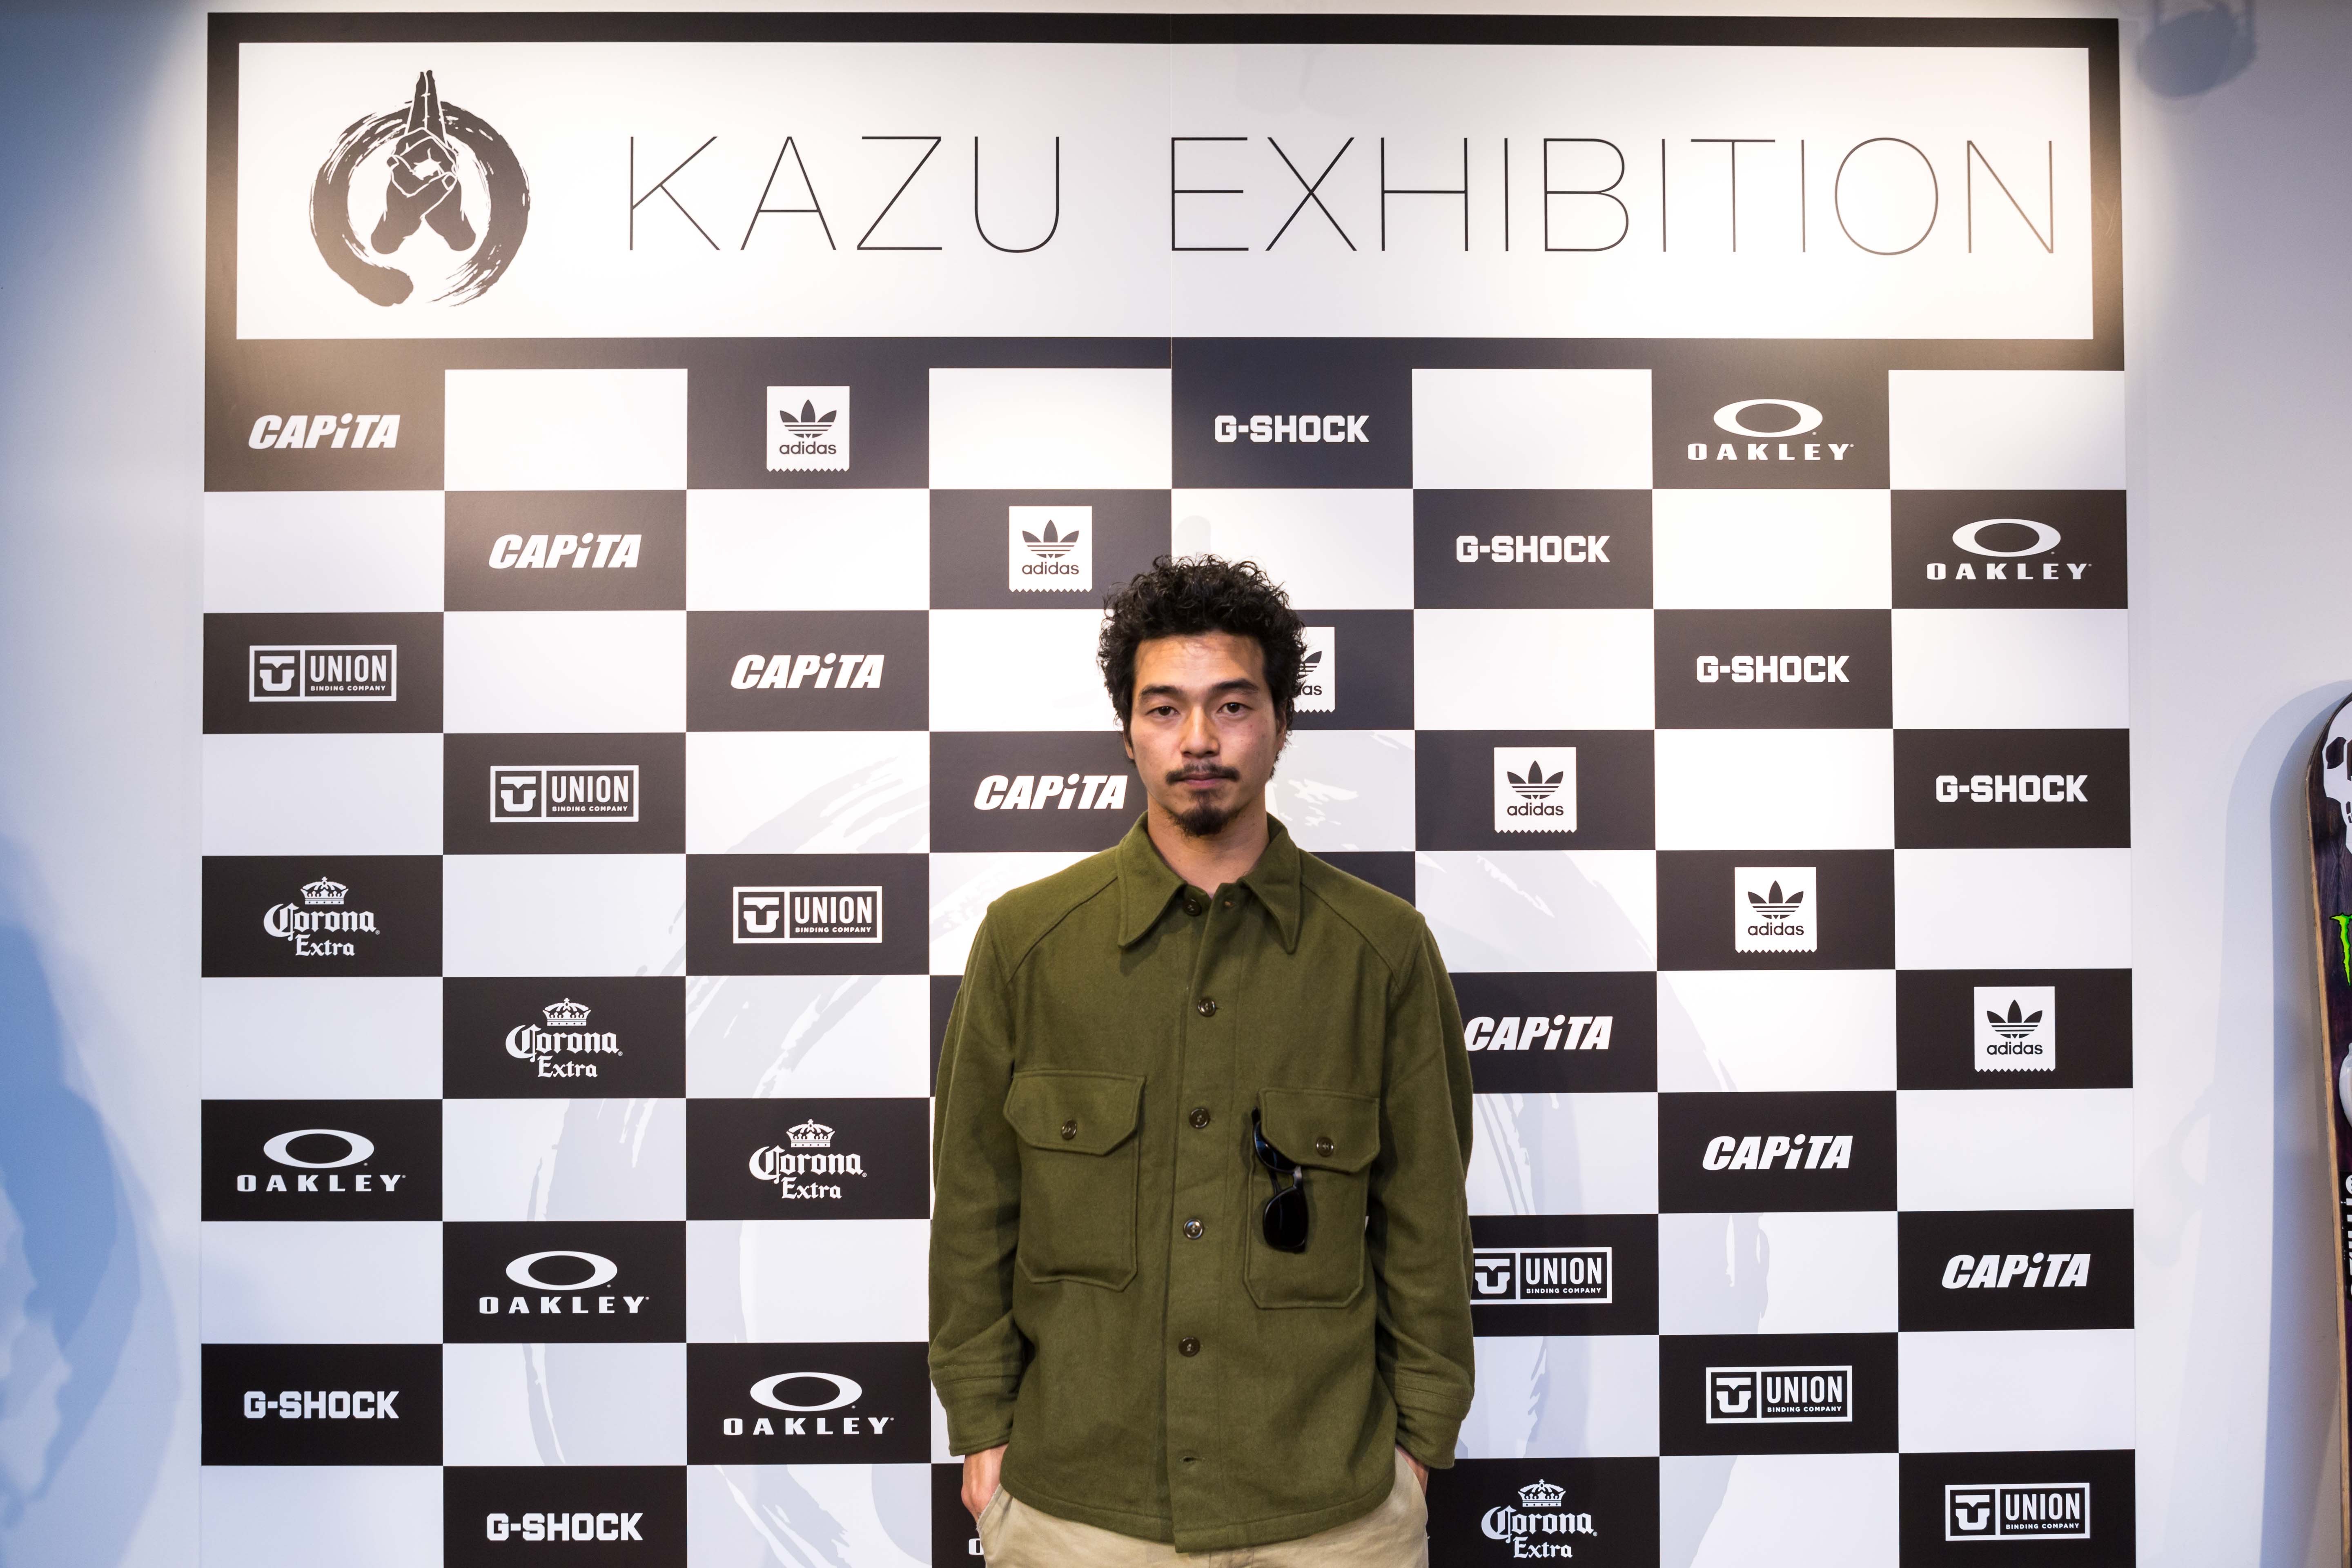 Kazu kokubo シグネチャー adidasスノーボード 國母和宏 2XO-